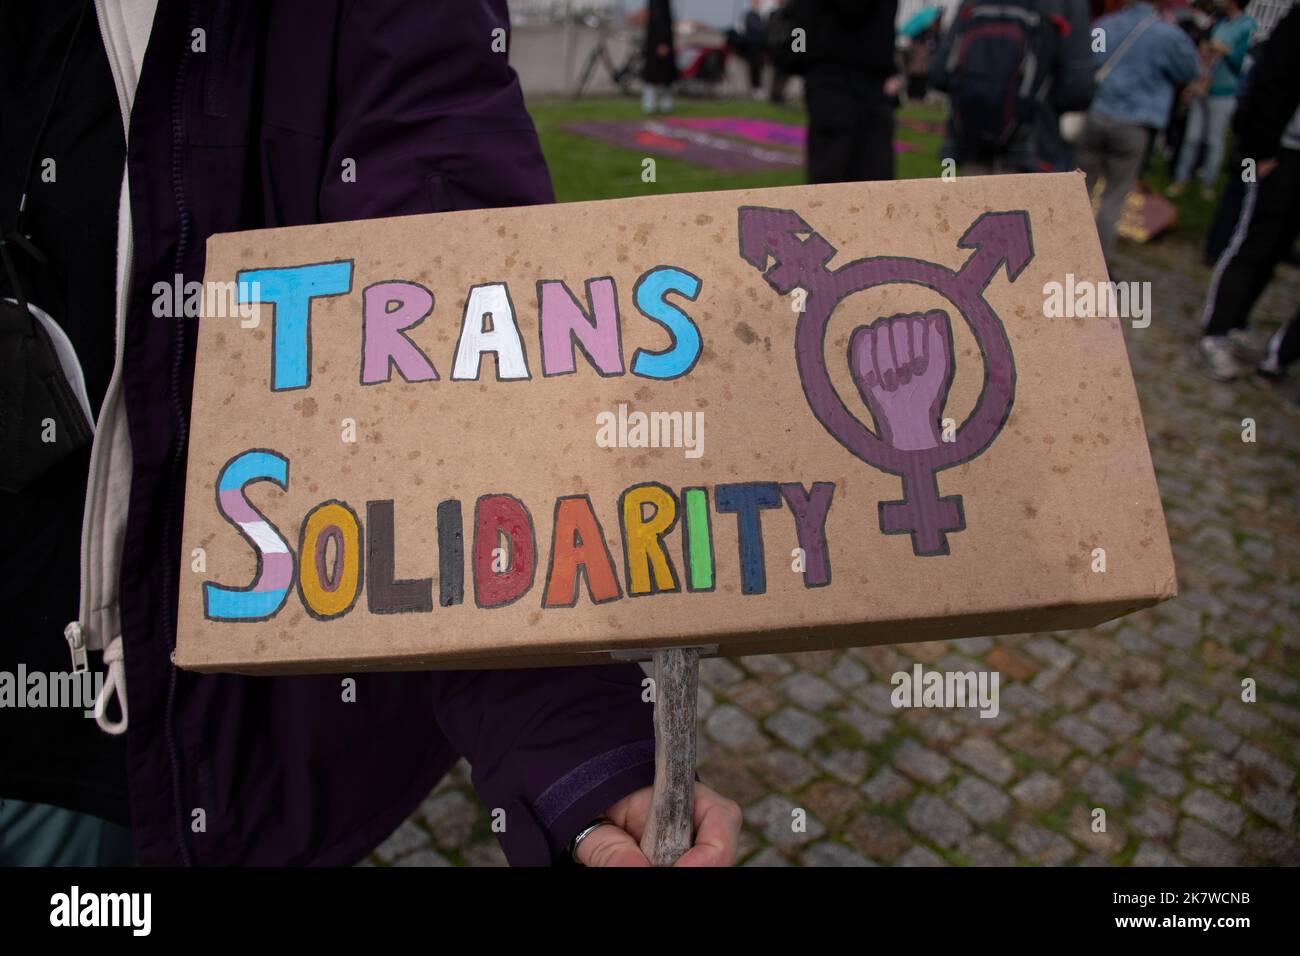 Un manifestant contre les droits transgenres affiche un signe de solidarité trans lors d'une manifestation contre Terfs à Berlin, en Allemagne Banque D'Images